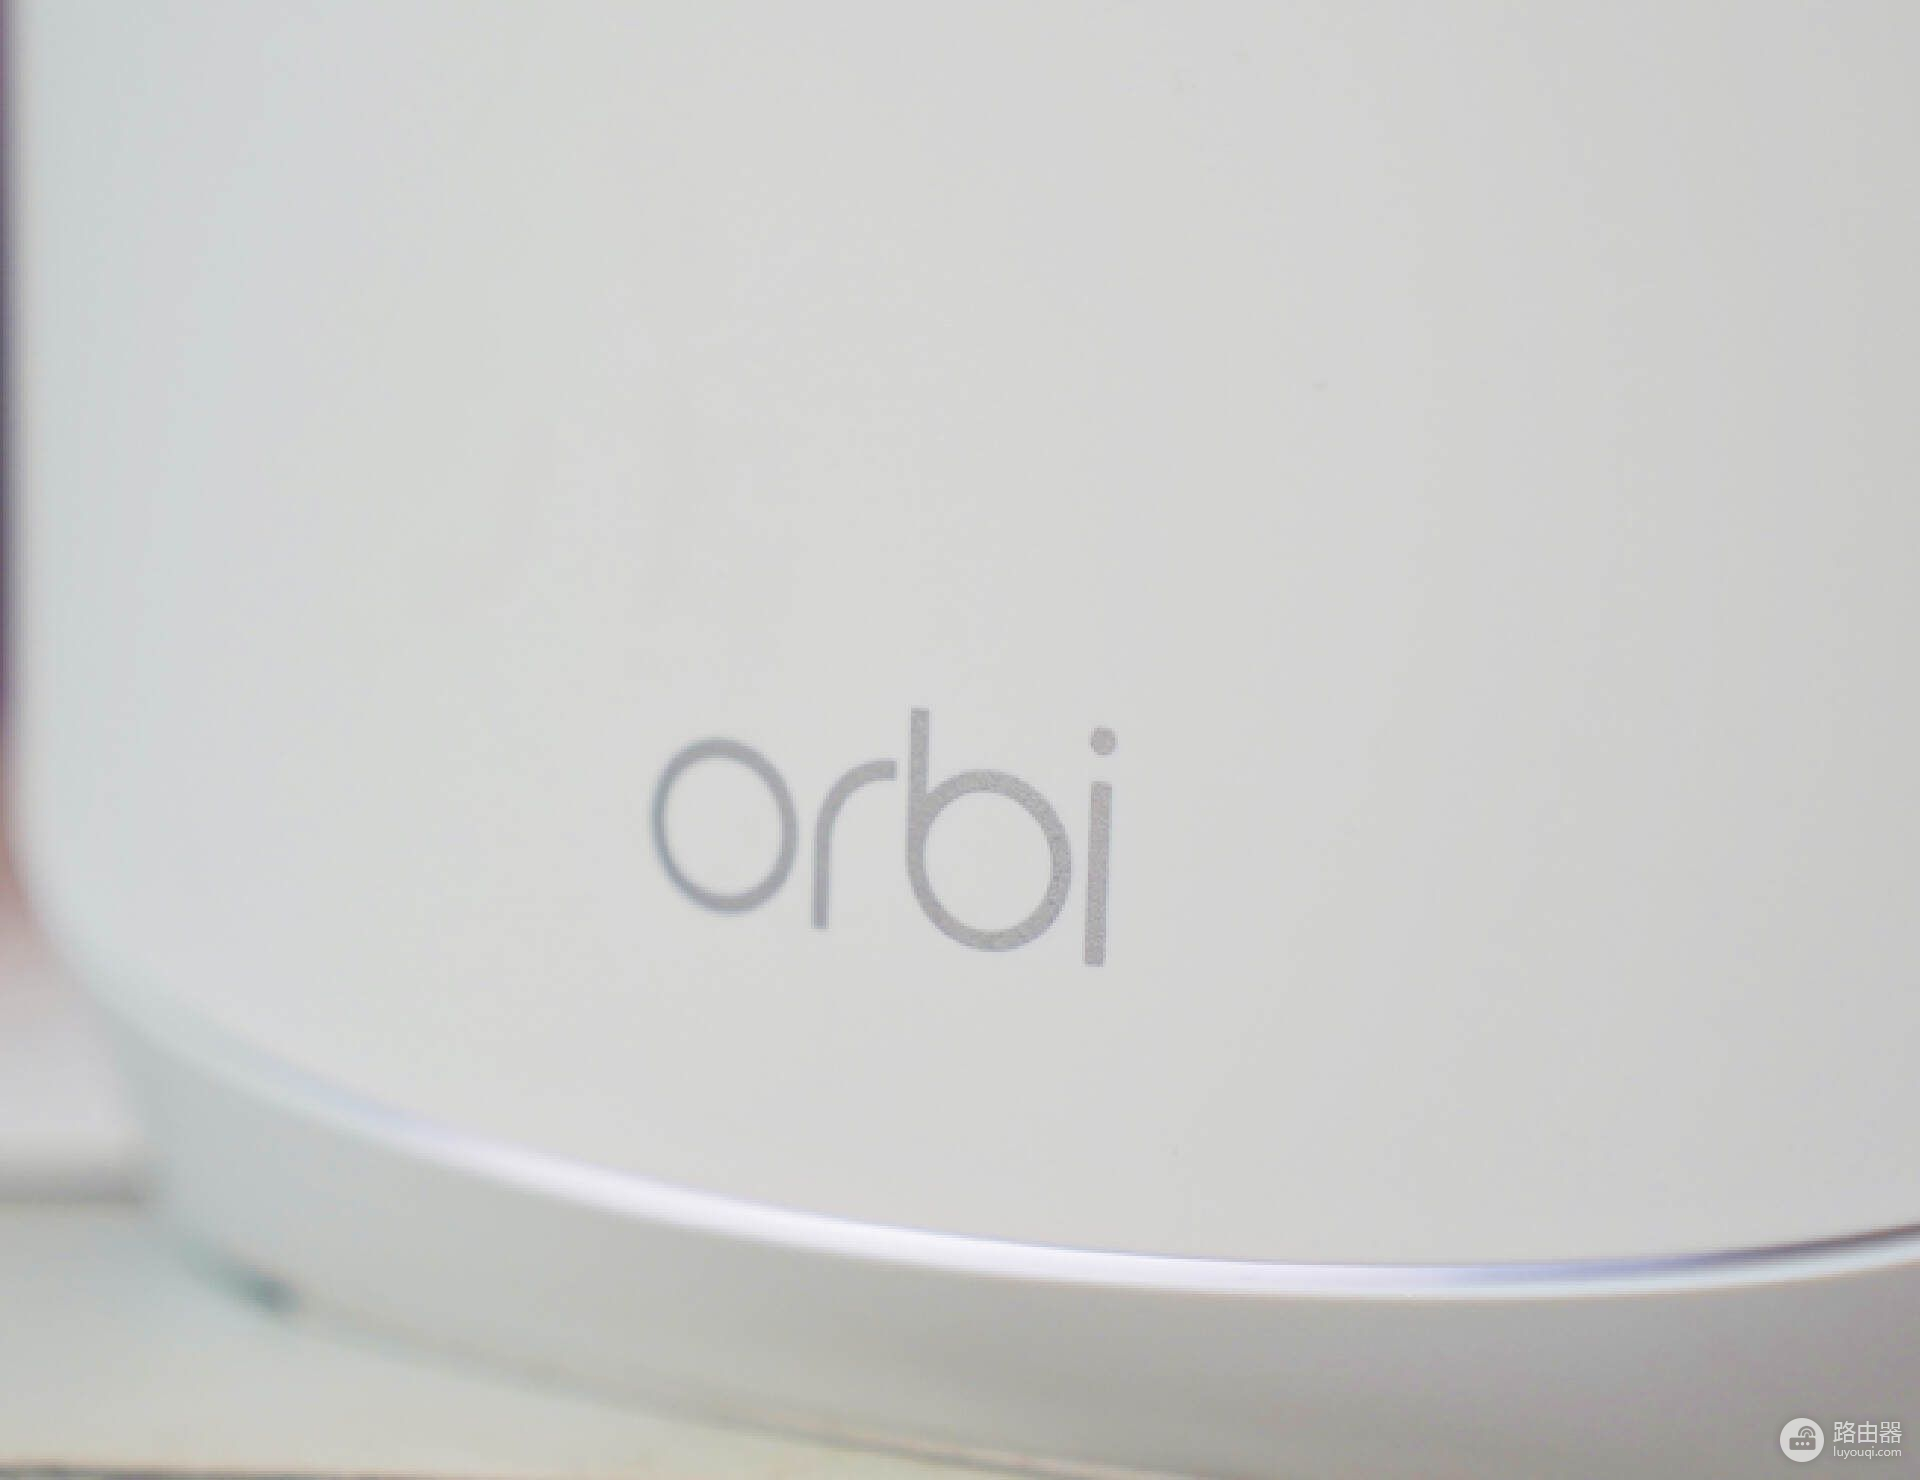 芯片缺货还将持续，美国网件Orbi路由器套装真香产品